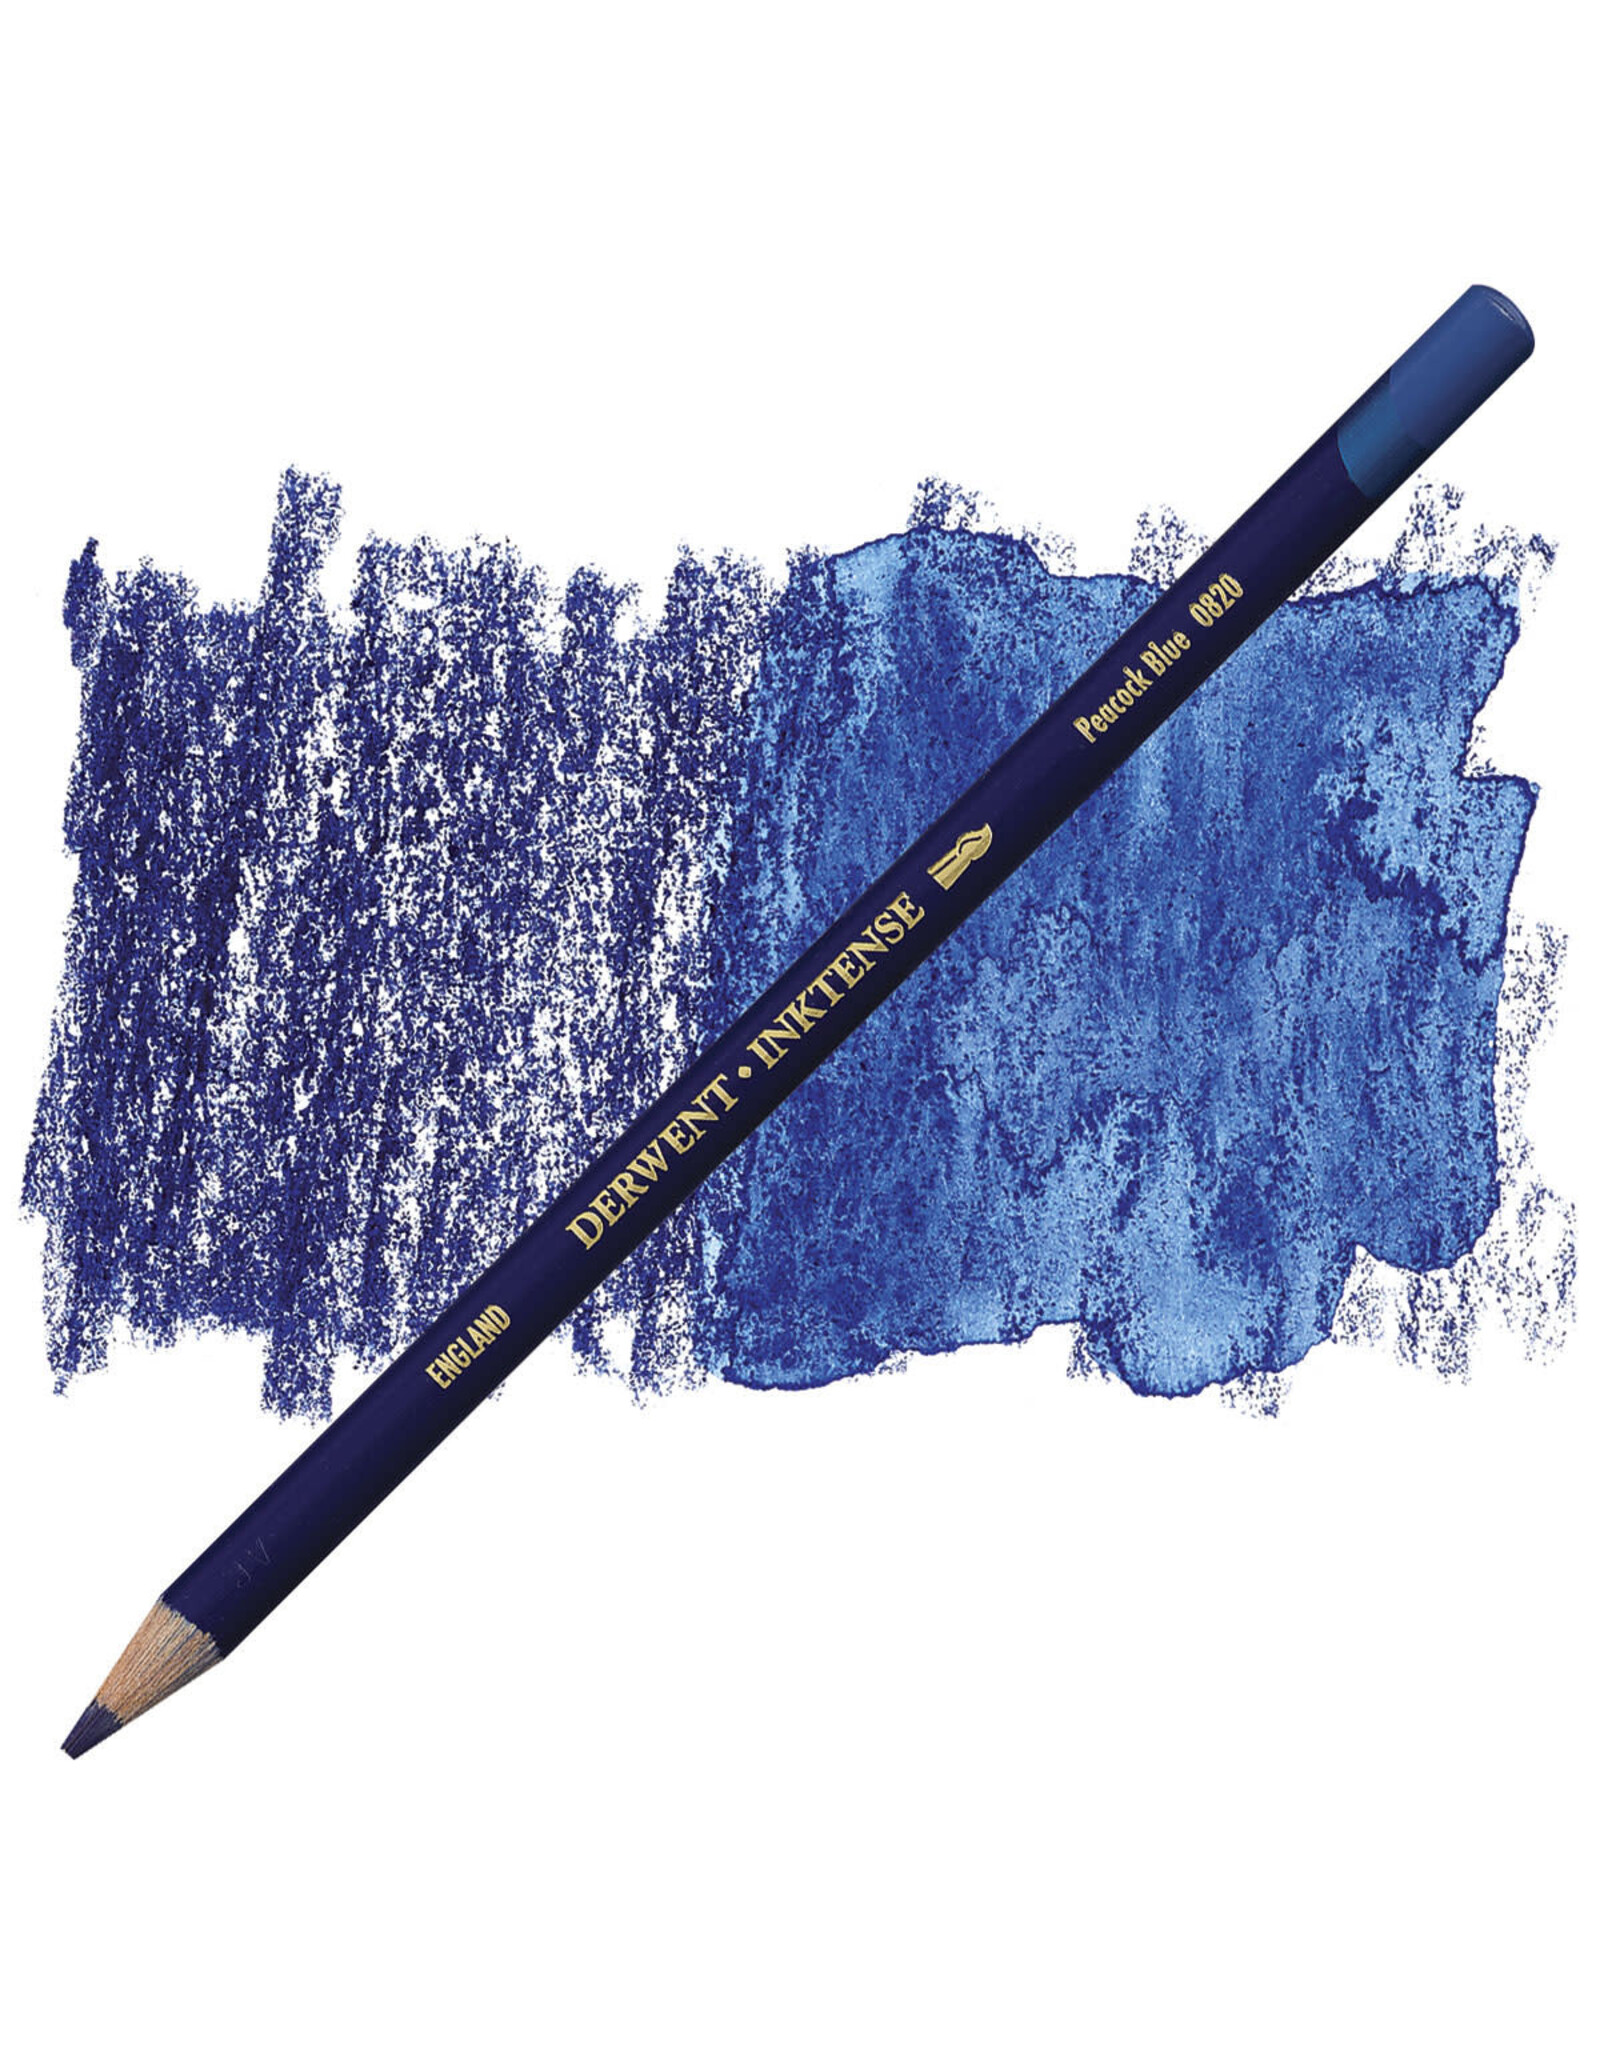 DERWENT INKTENSE PENCIL - PEACOCK BLUE